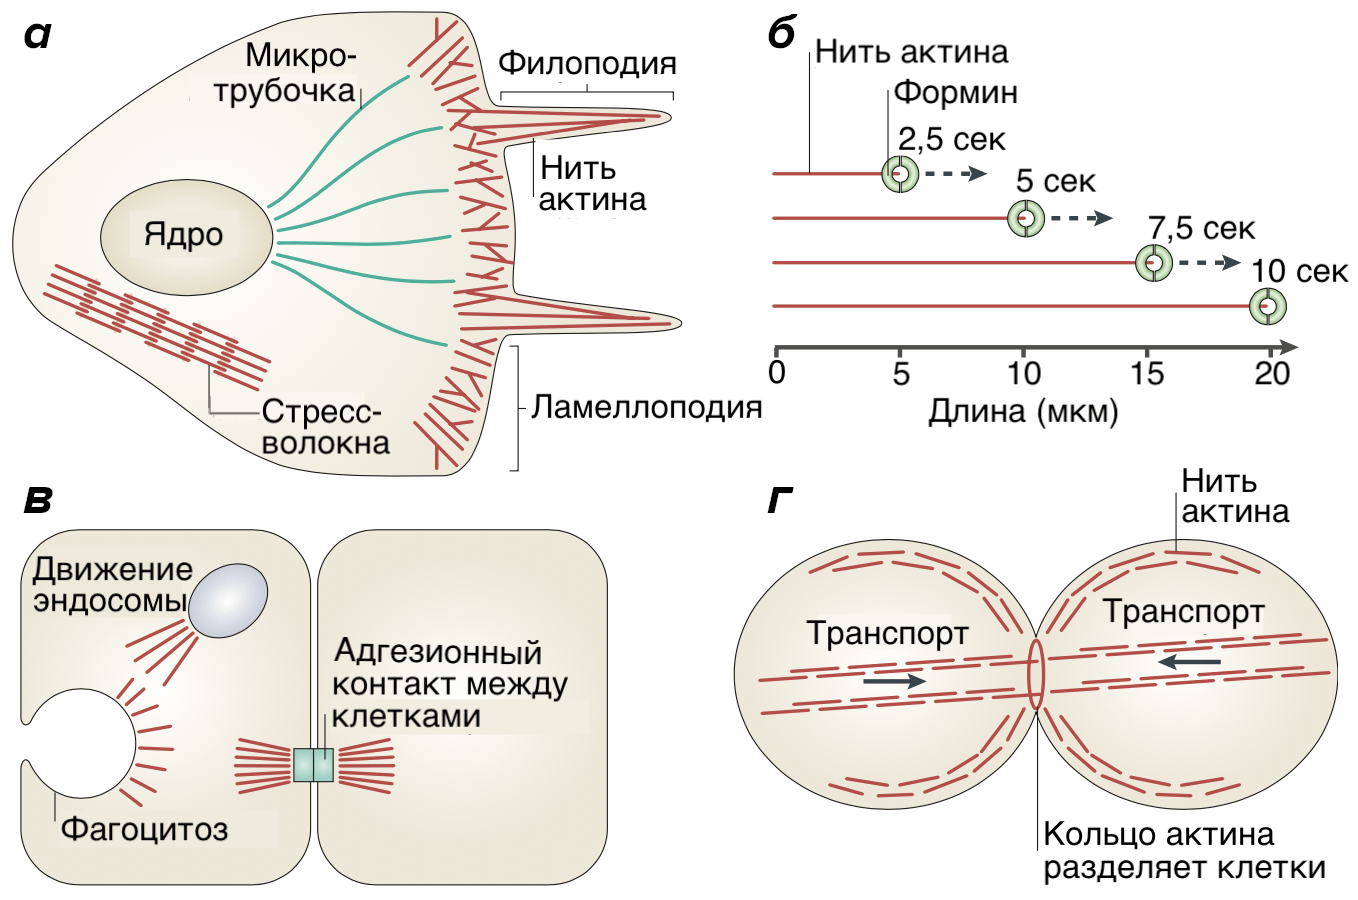 Работа актина и форминов в клетке